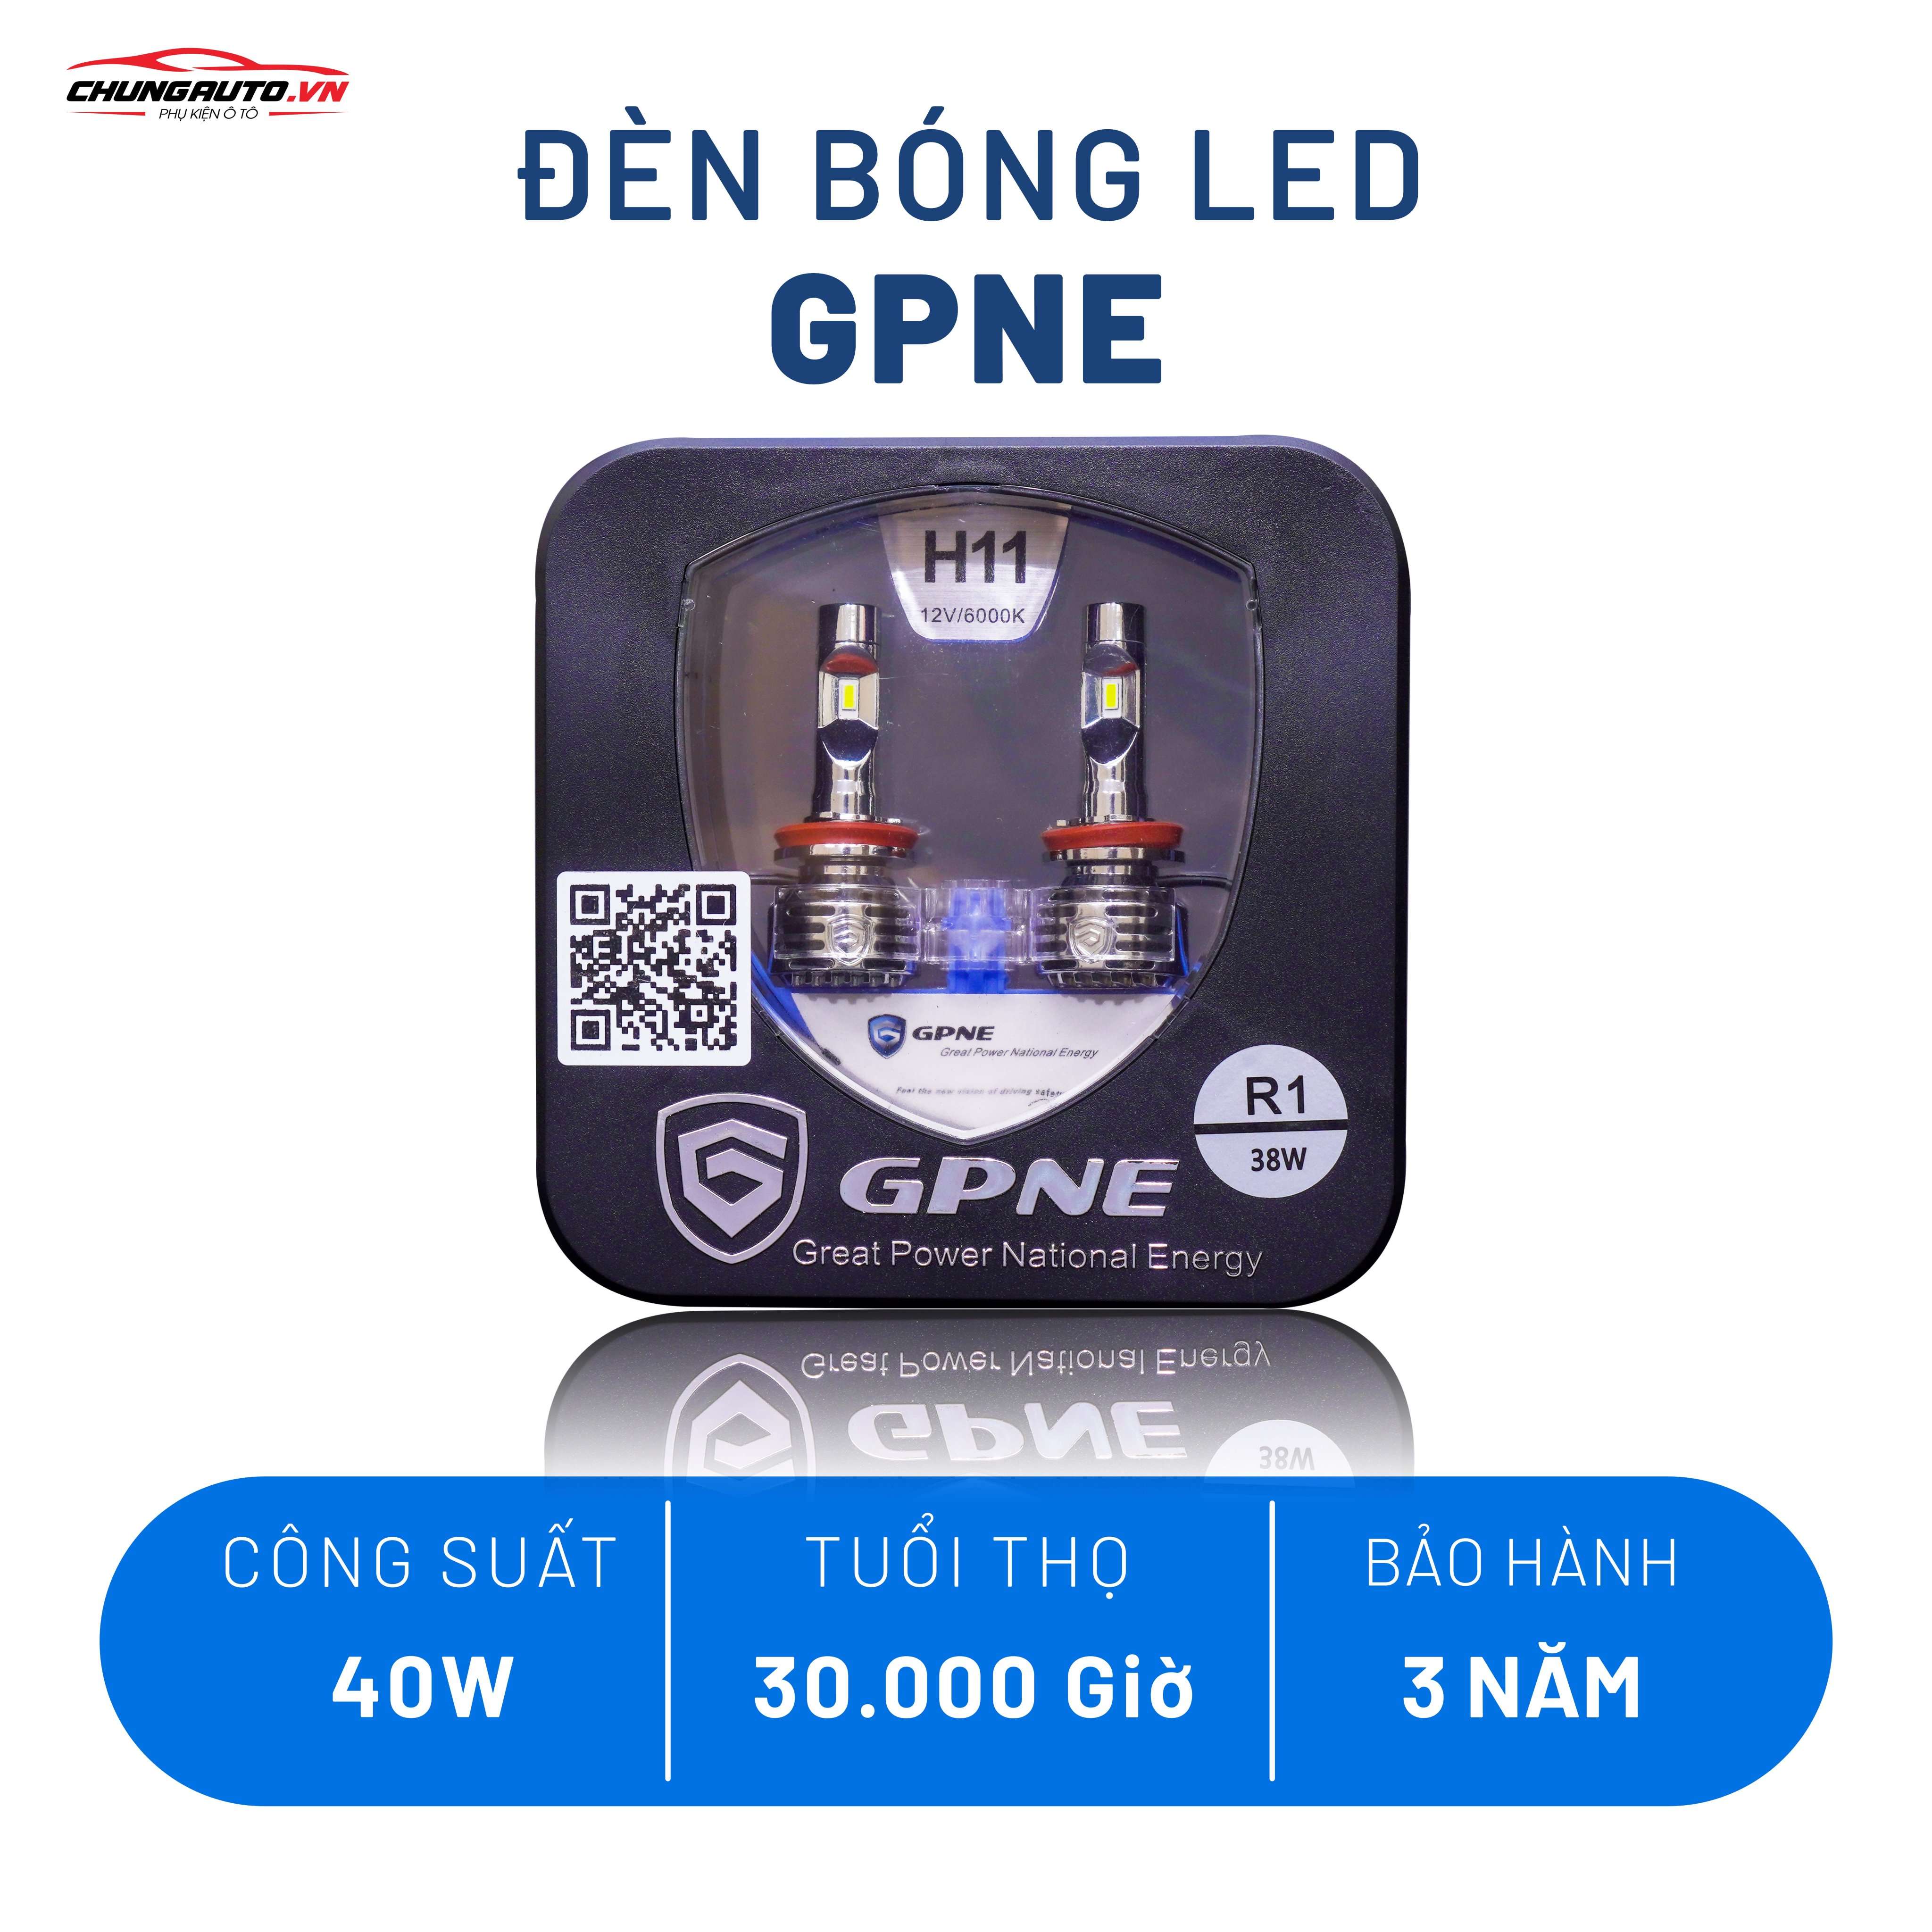 Bóng đèn Led GPNE R1 - Khả năng chiếu sáng bất chấp mọi điều kiện thời tiết